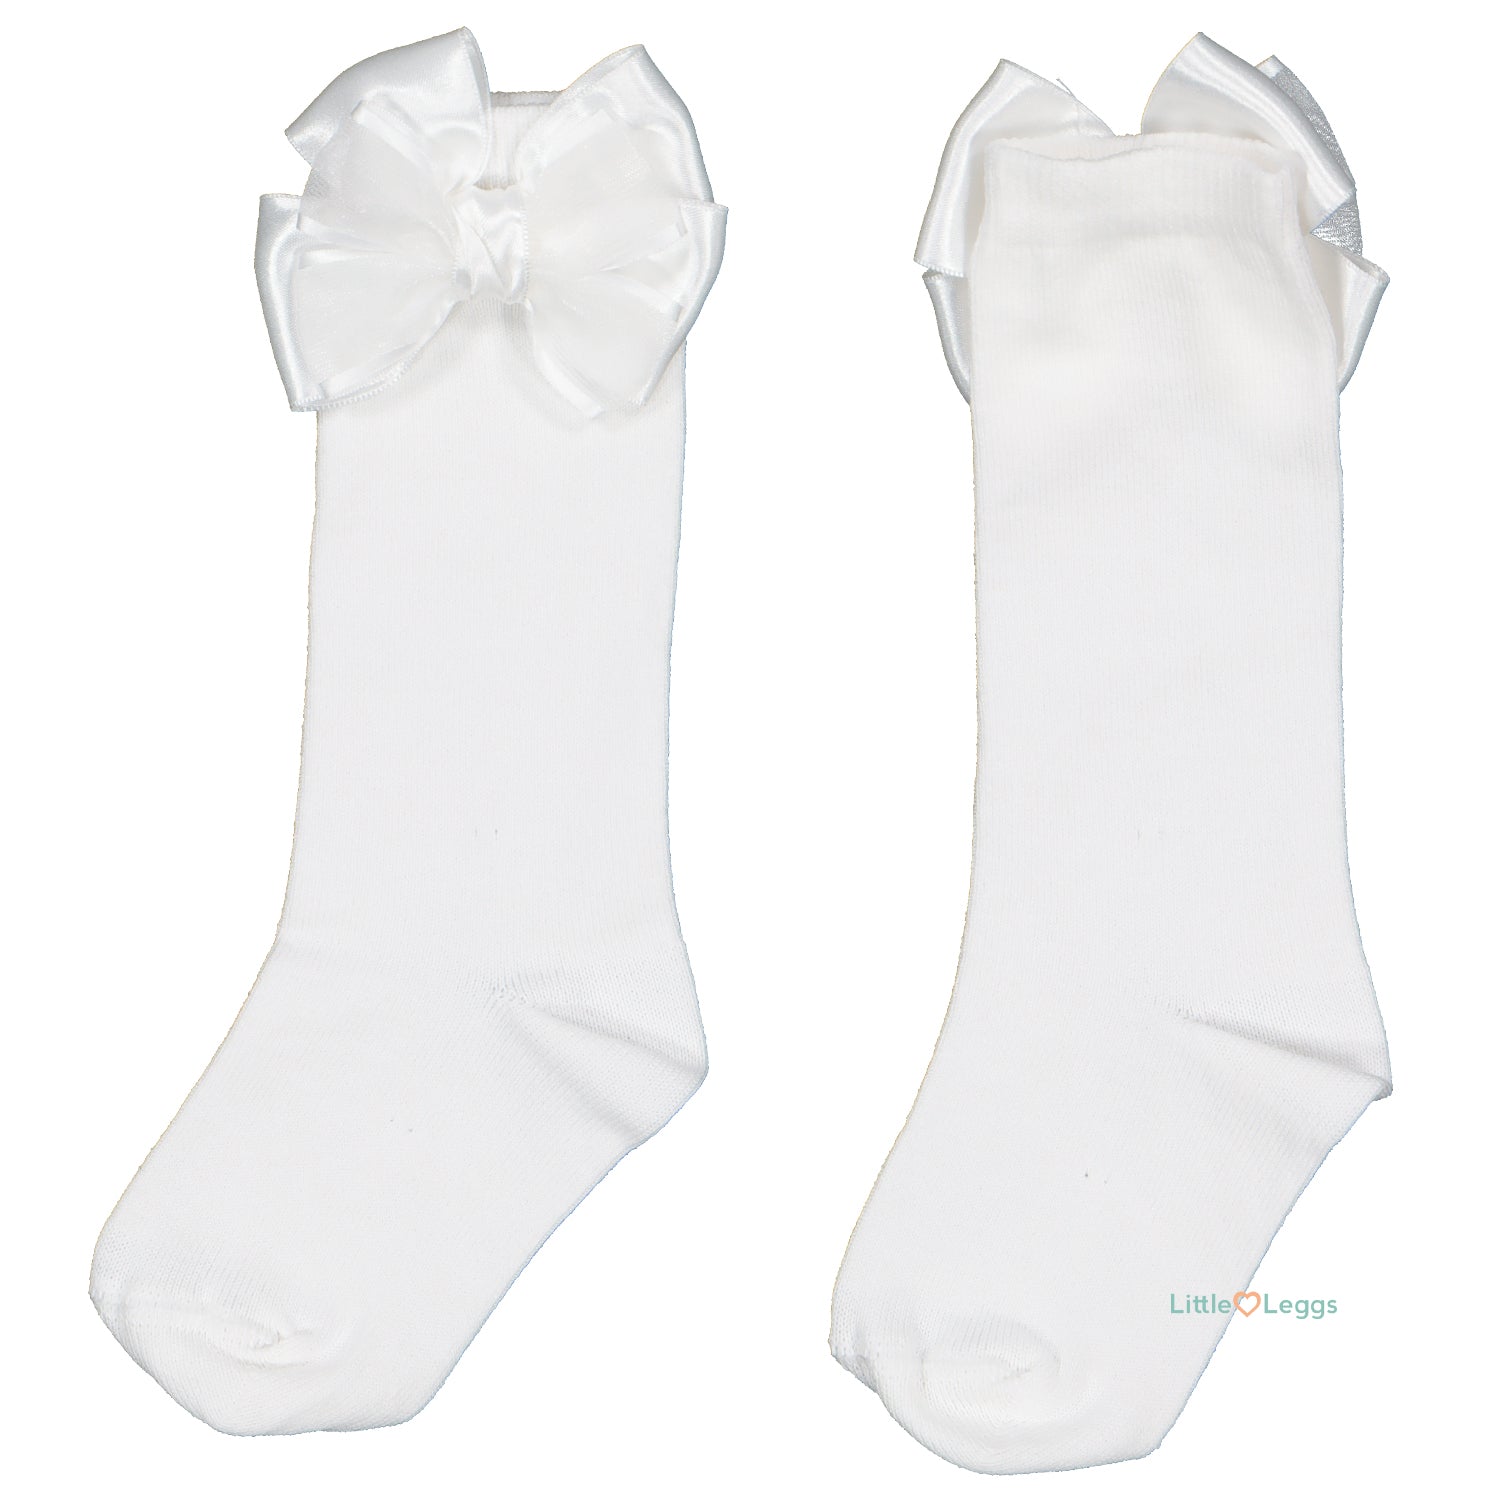 White Double Bow Socks - Knee High